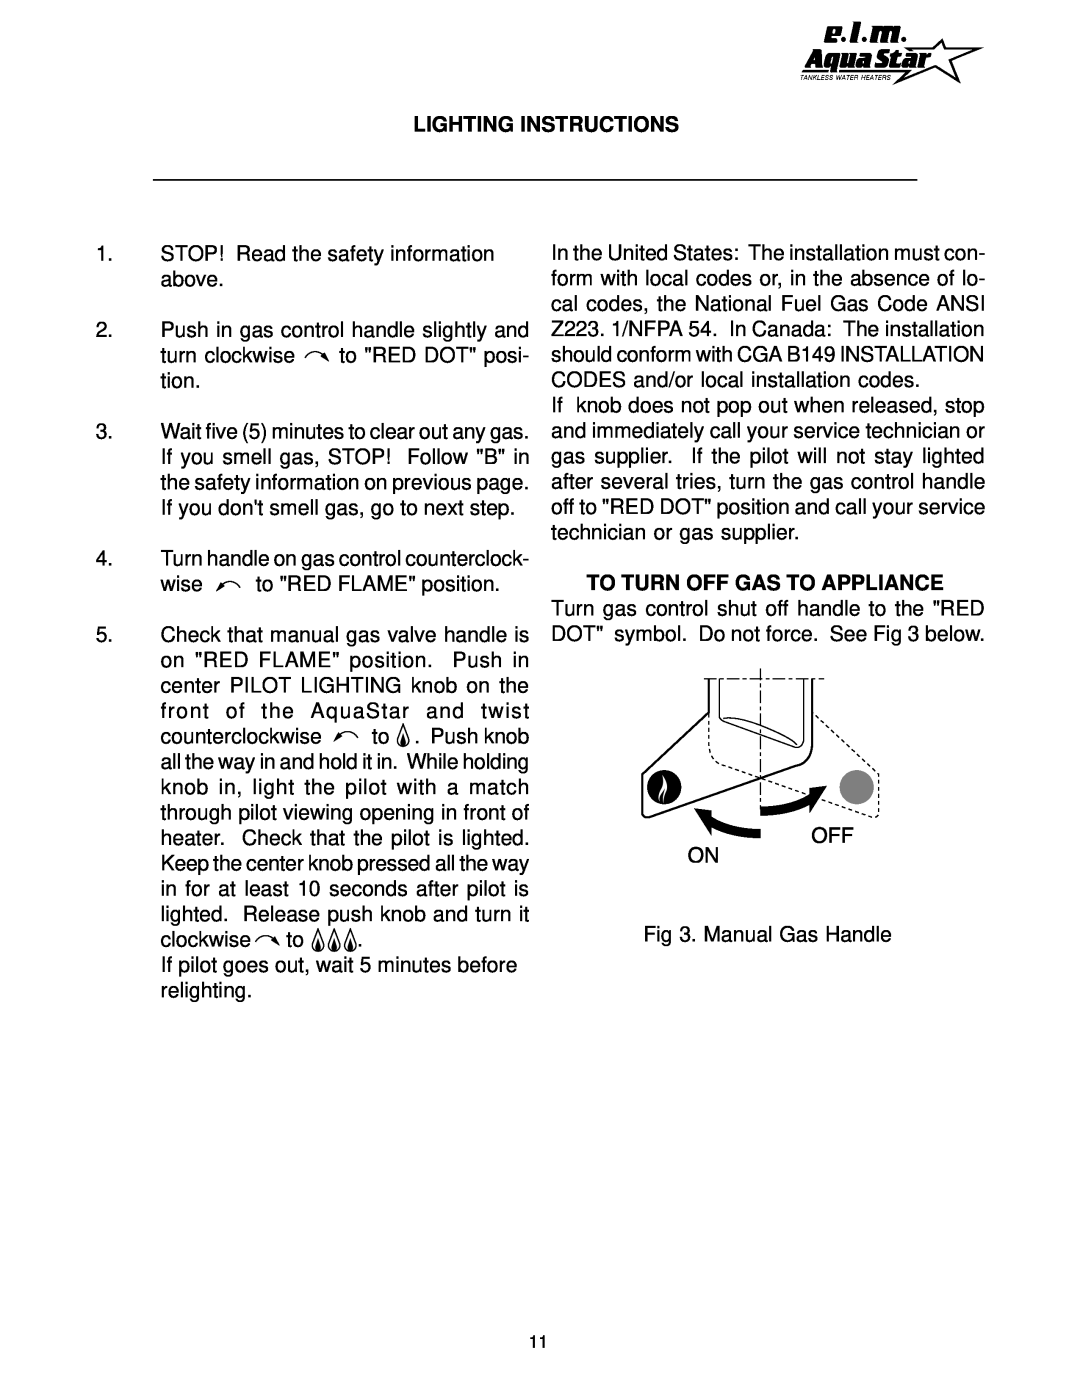 AquaStar 170 VP manual Lighting Instructions 